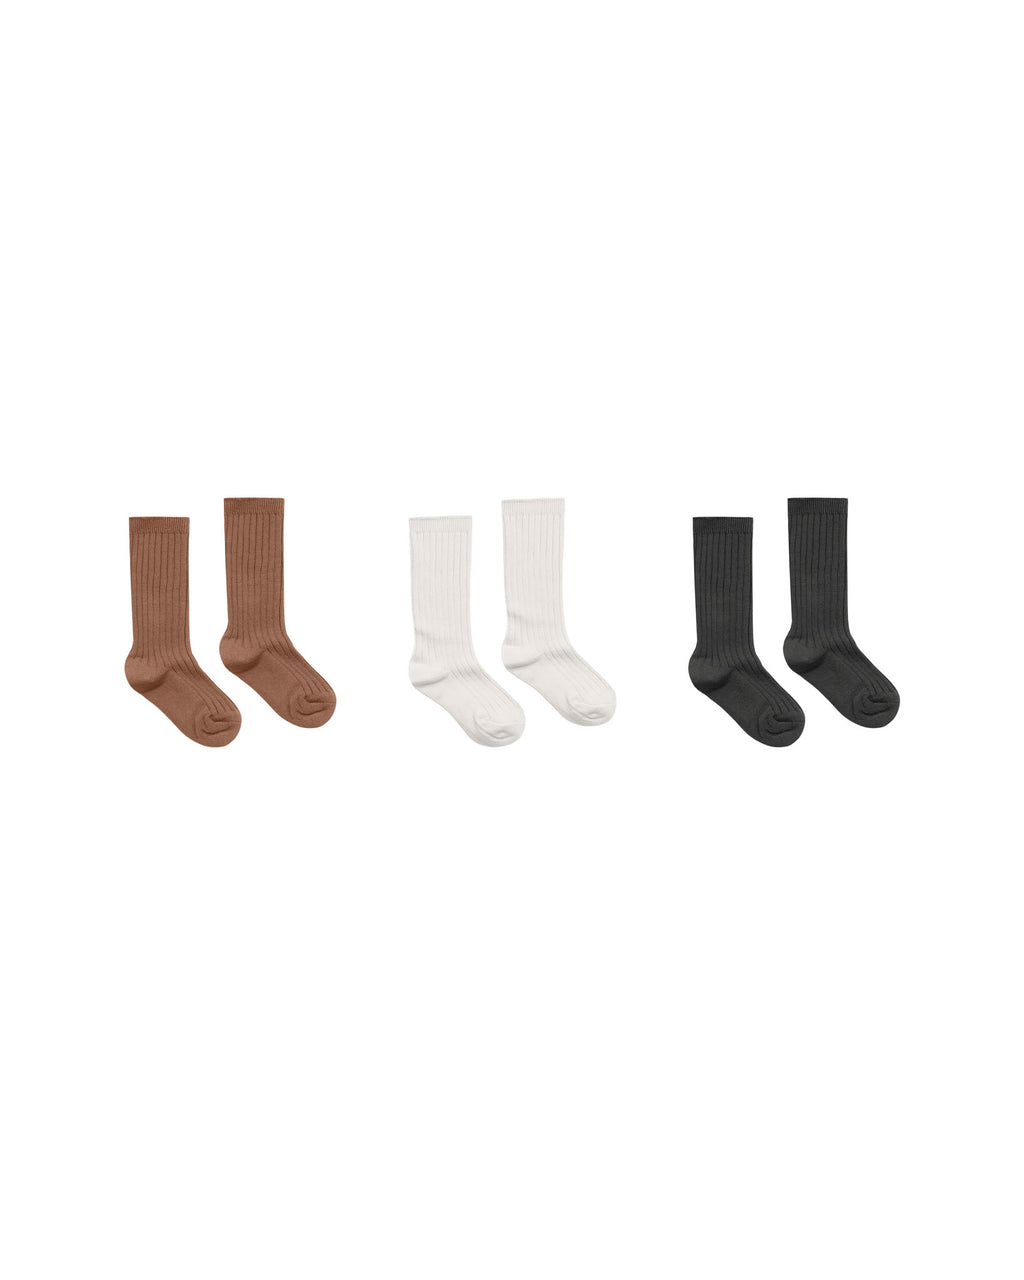 Rylee + Cru Ribbed Socks - Cedar, Ivory, Black